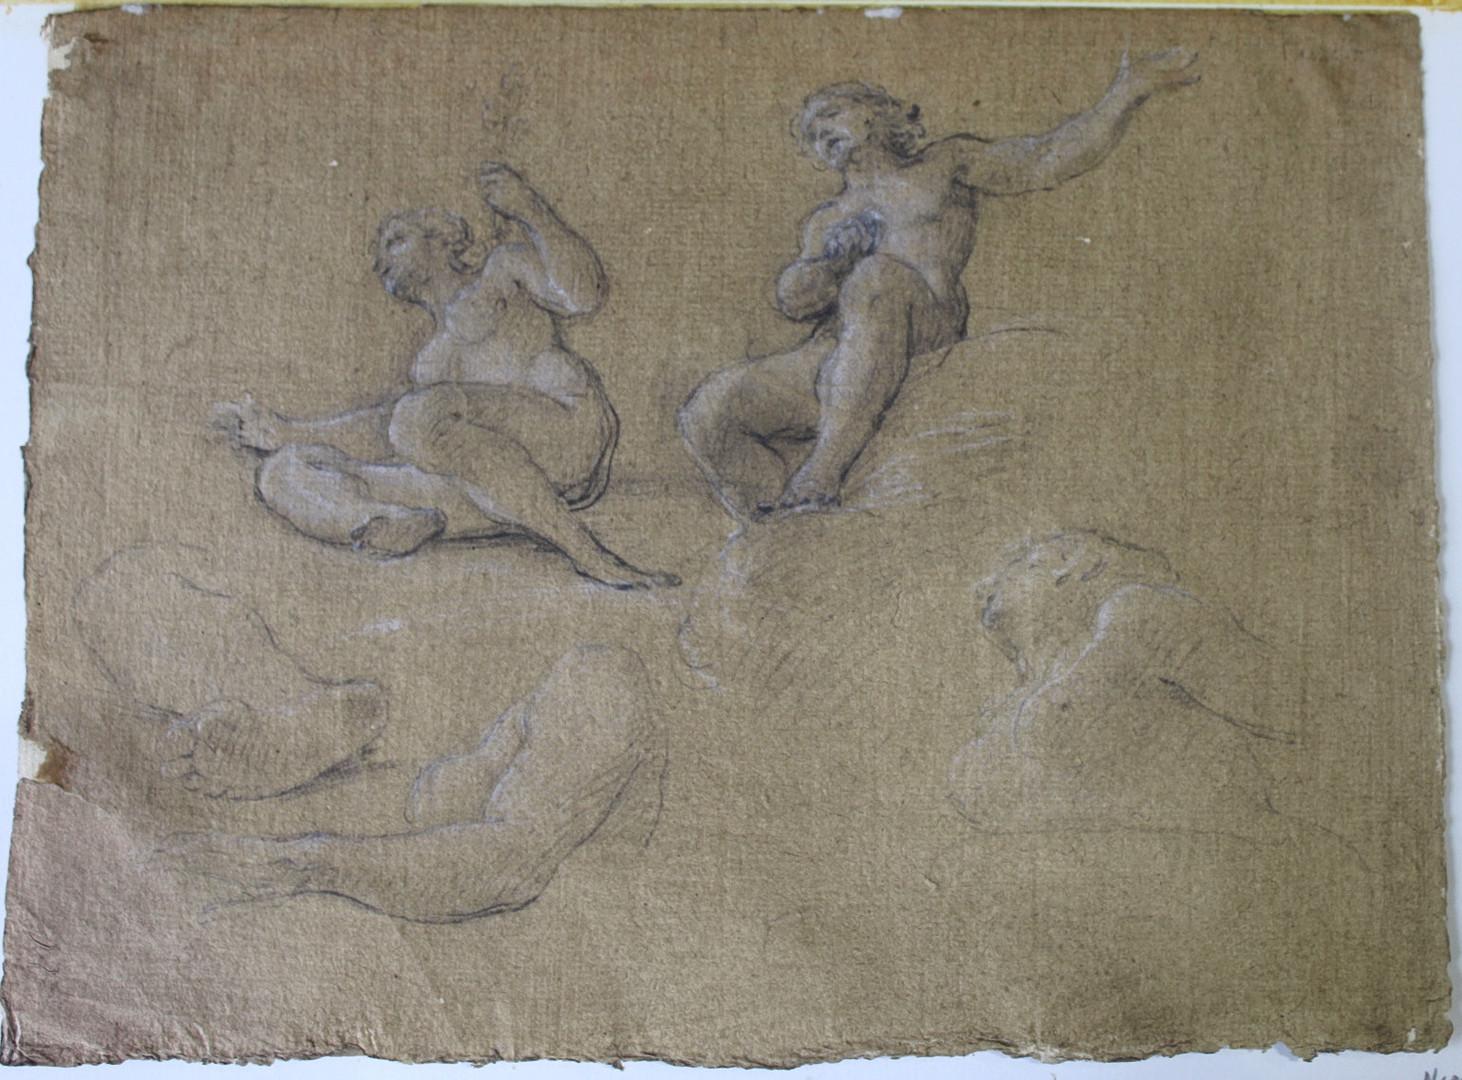 Nude Circle of Pompeo Batoni (Lucca 1708 - Rome 1787) - Dessin italien du 18ème siècle de Masterly Croquis de personnages nus masculins et féminins